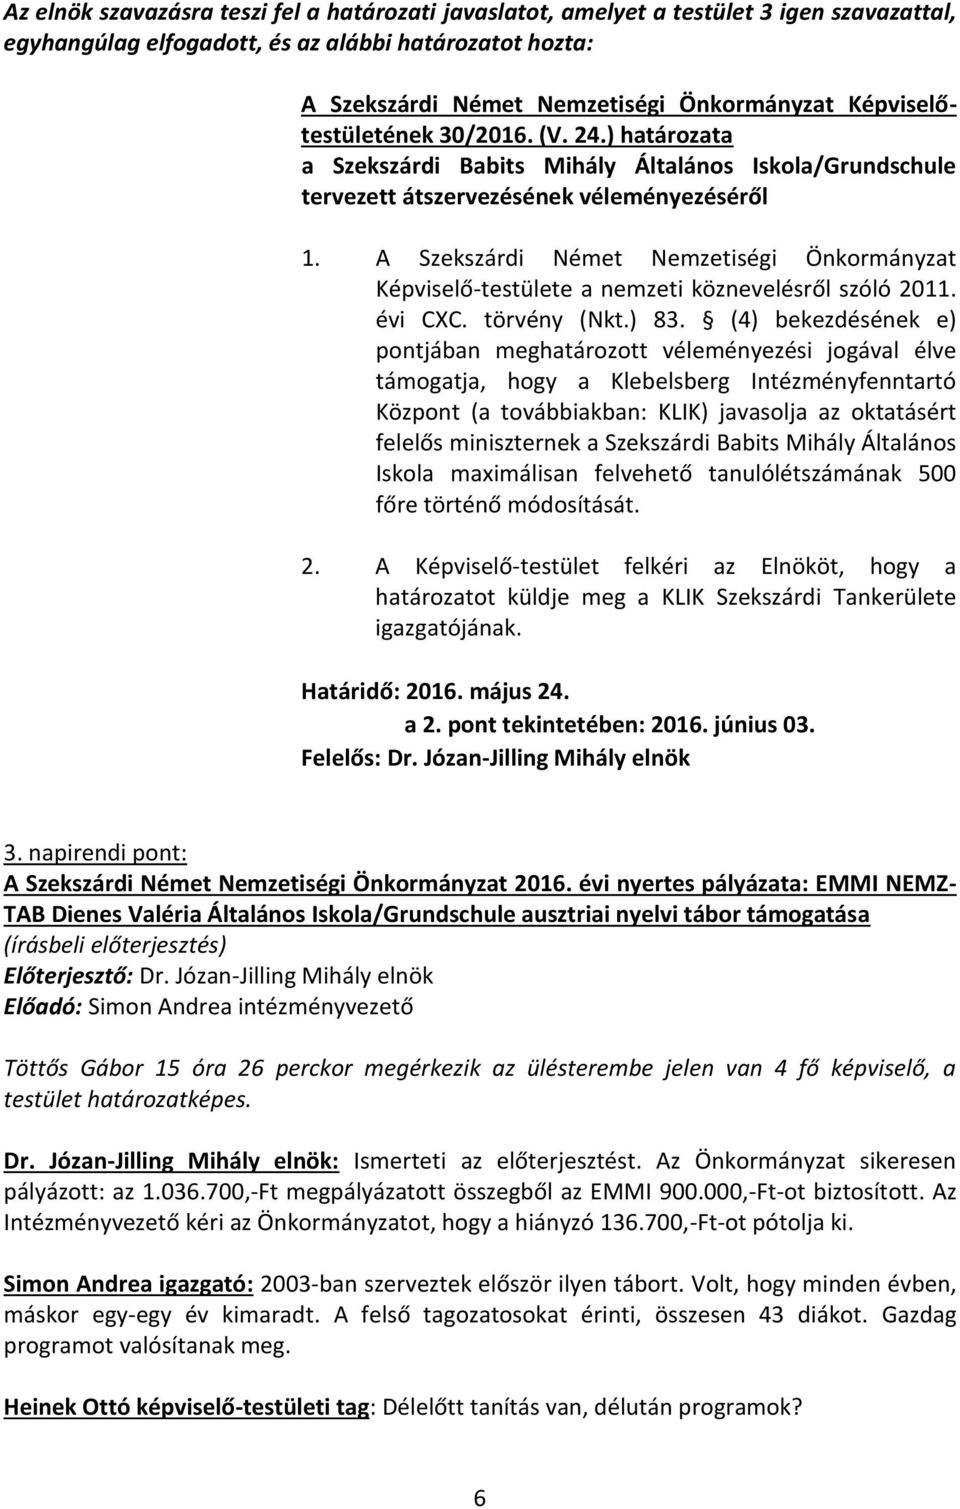 A Szekszárdi Német Nemzetiségi Önkormányzat Képviselő-testülete a nemzeti köznevelésről szóló 2011. évi CXC. törvény (Nkt.) 83.